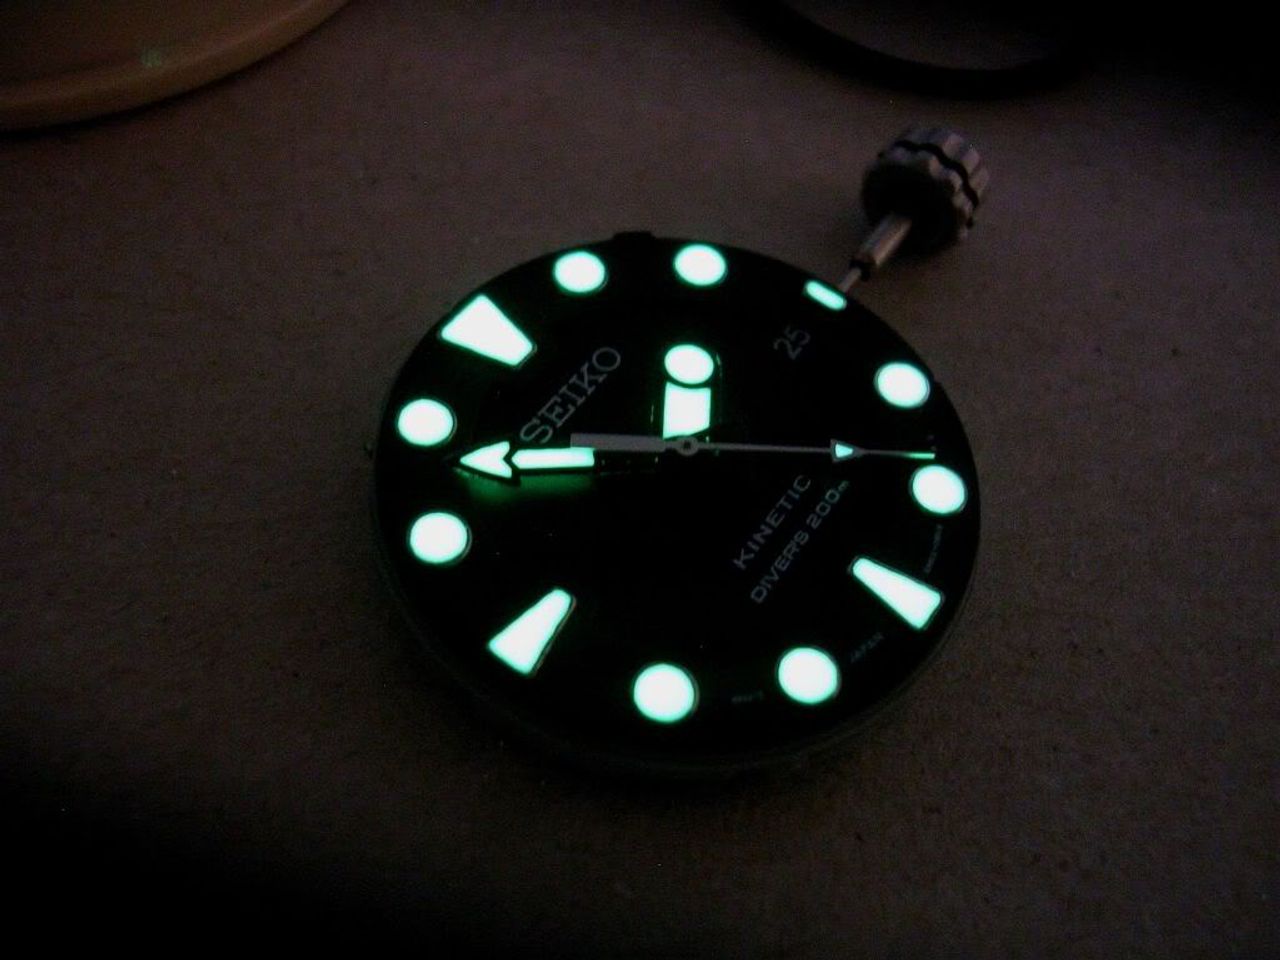 Đồng hồ Seiko Kinetic cho nam SKA413 có khả năng phát quang khi ở dưới nước hoặc trong bóng tối